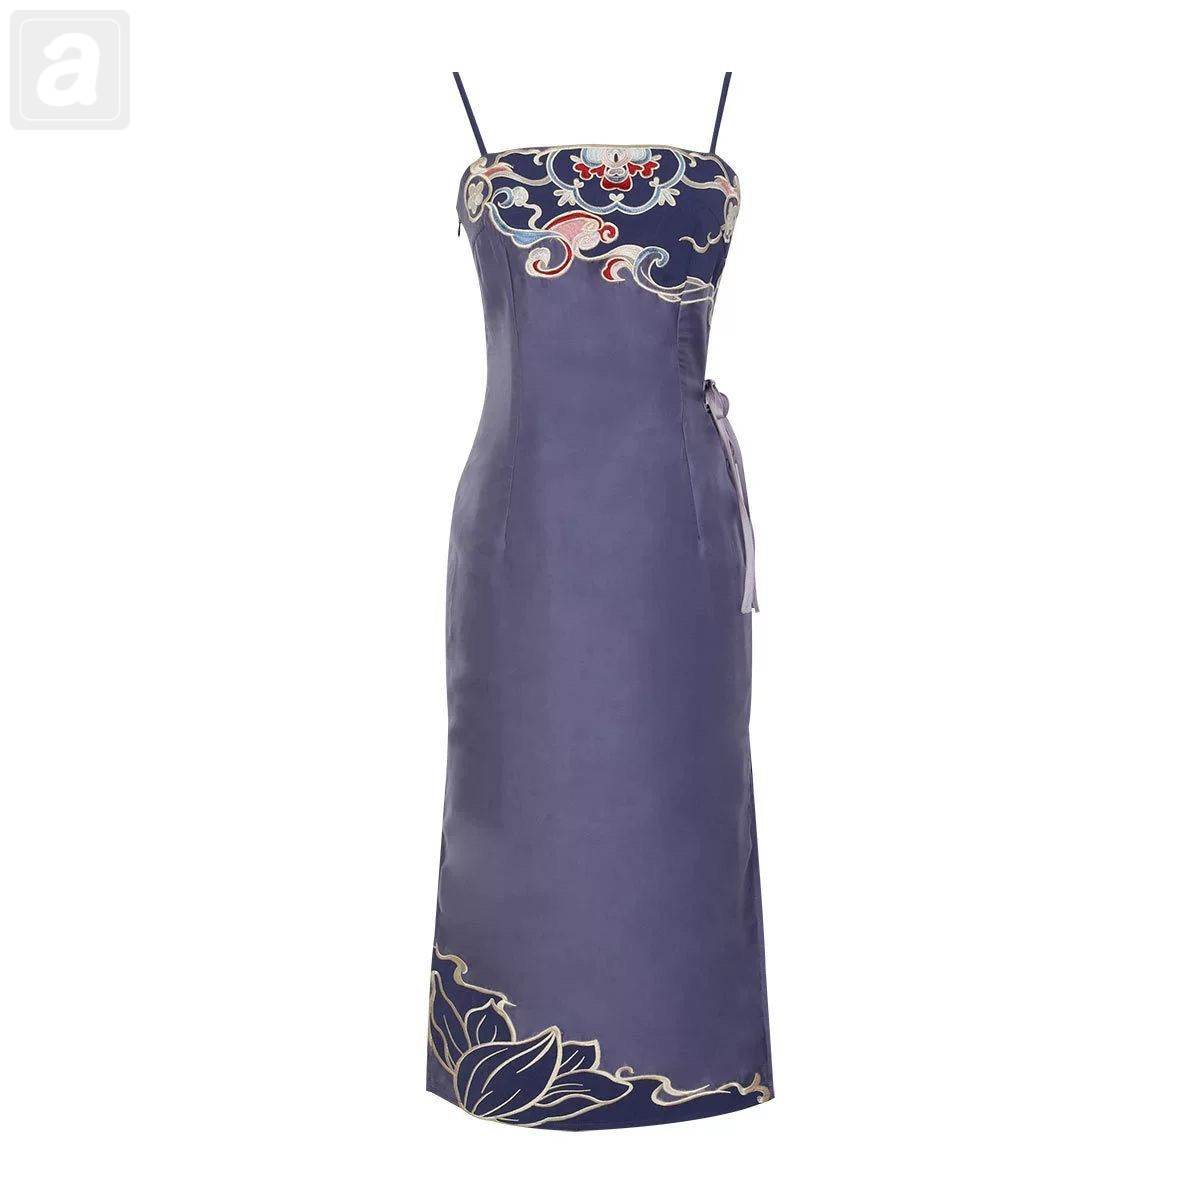 紫色吊帶裙/單品